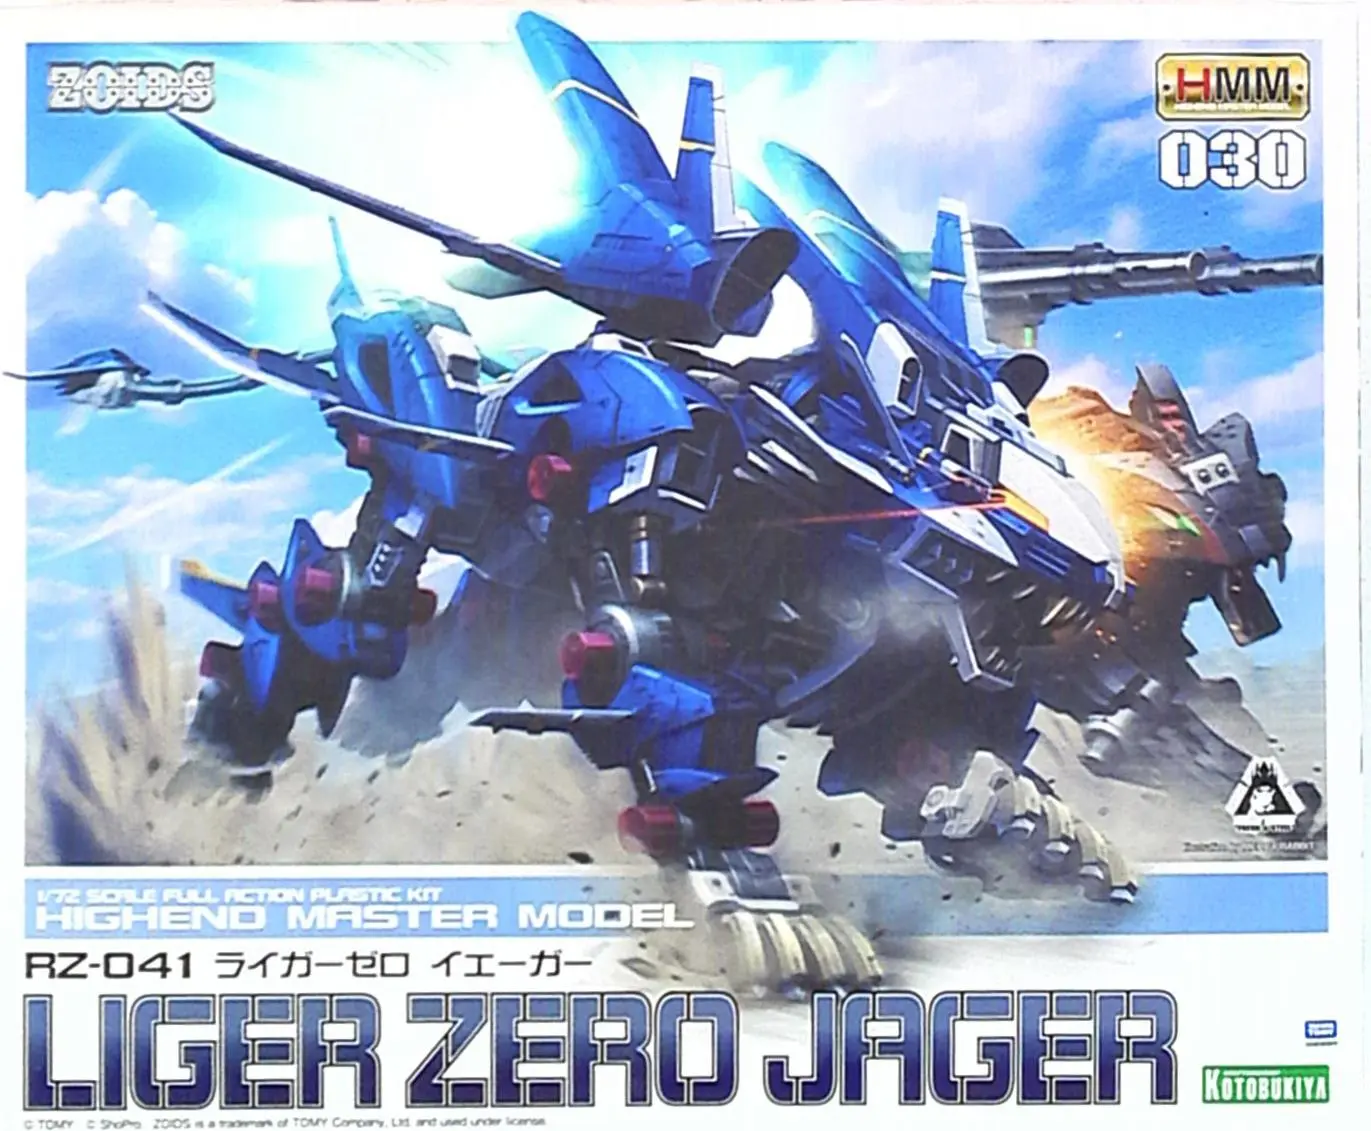 1/72 Scale Model Kit - ZOIDS / Liger Zero & Liger Zero Jager